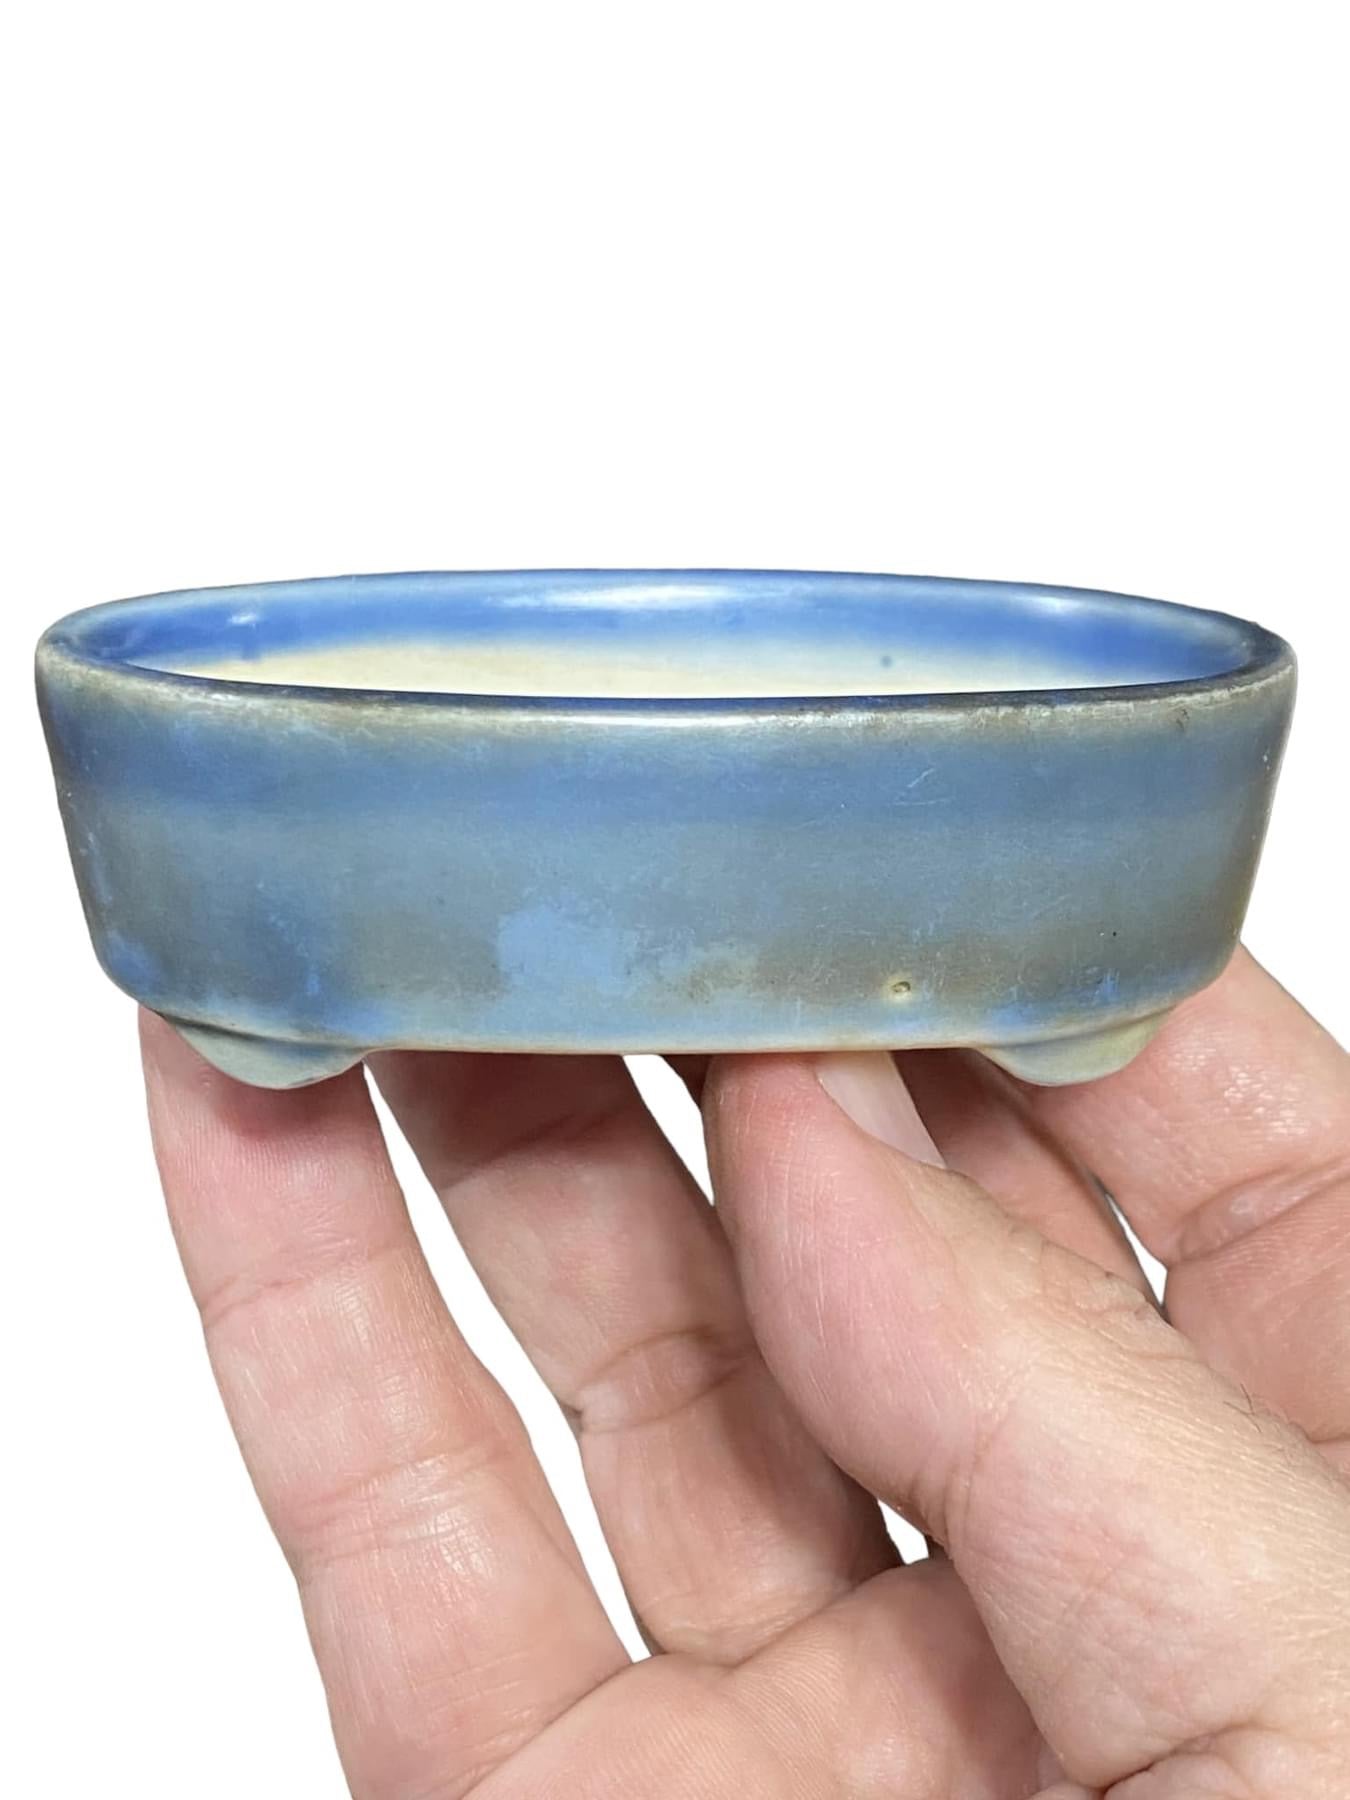 Japanese - Old Glazed Oval Bonsai Pot From Japan(Patina)